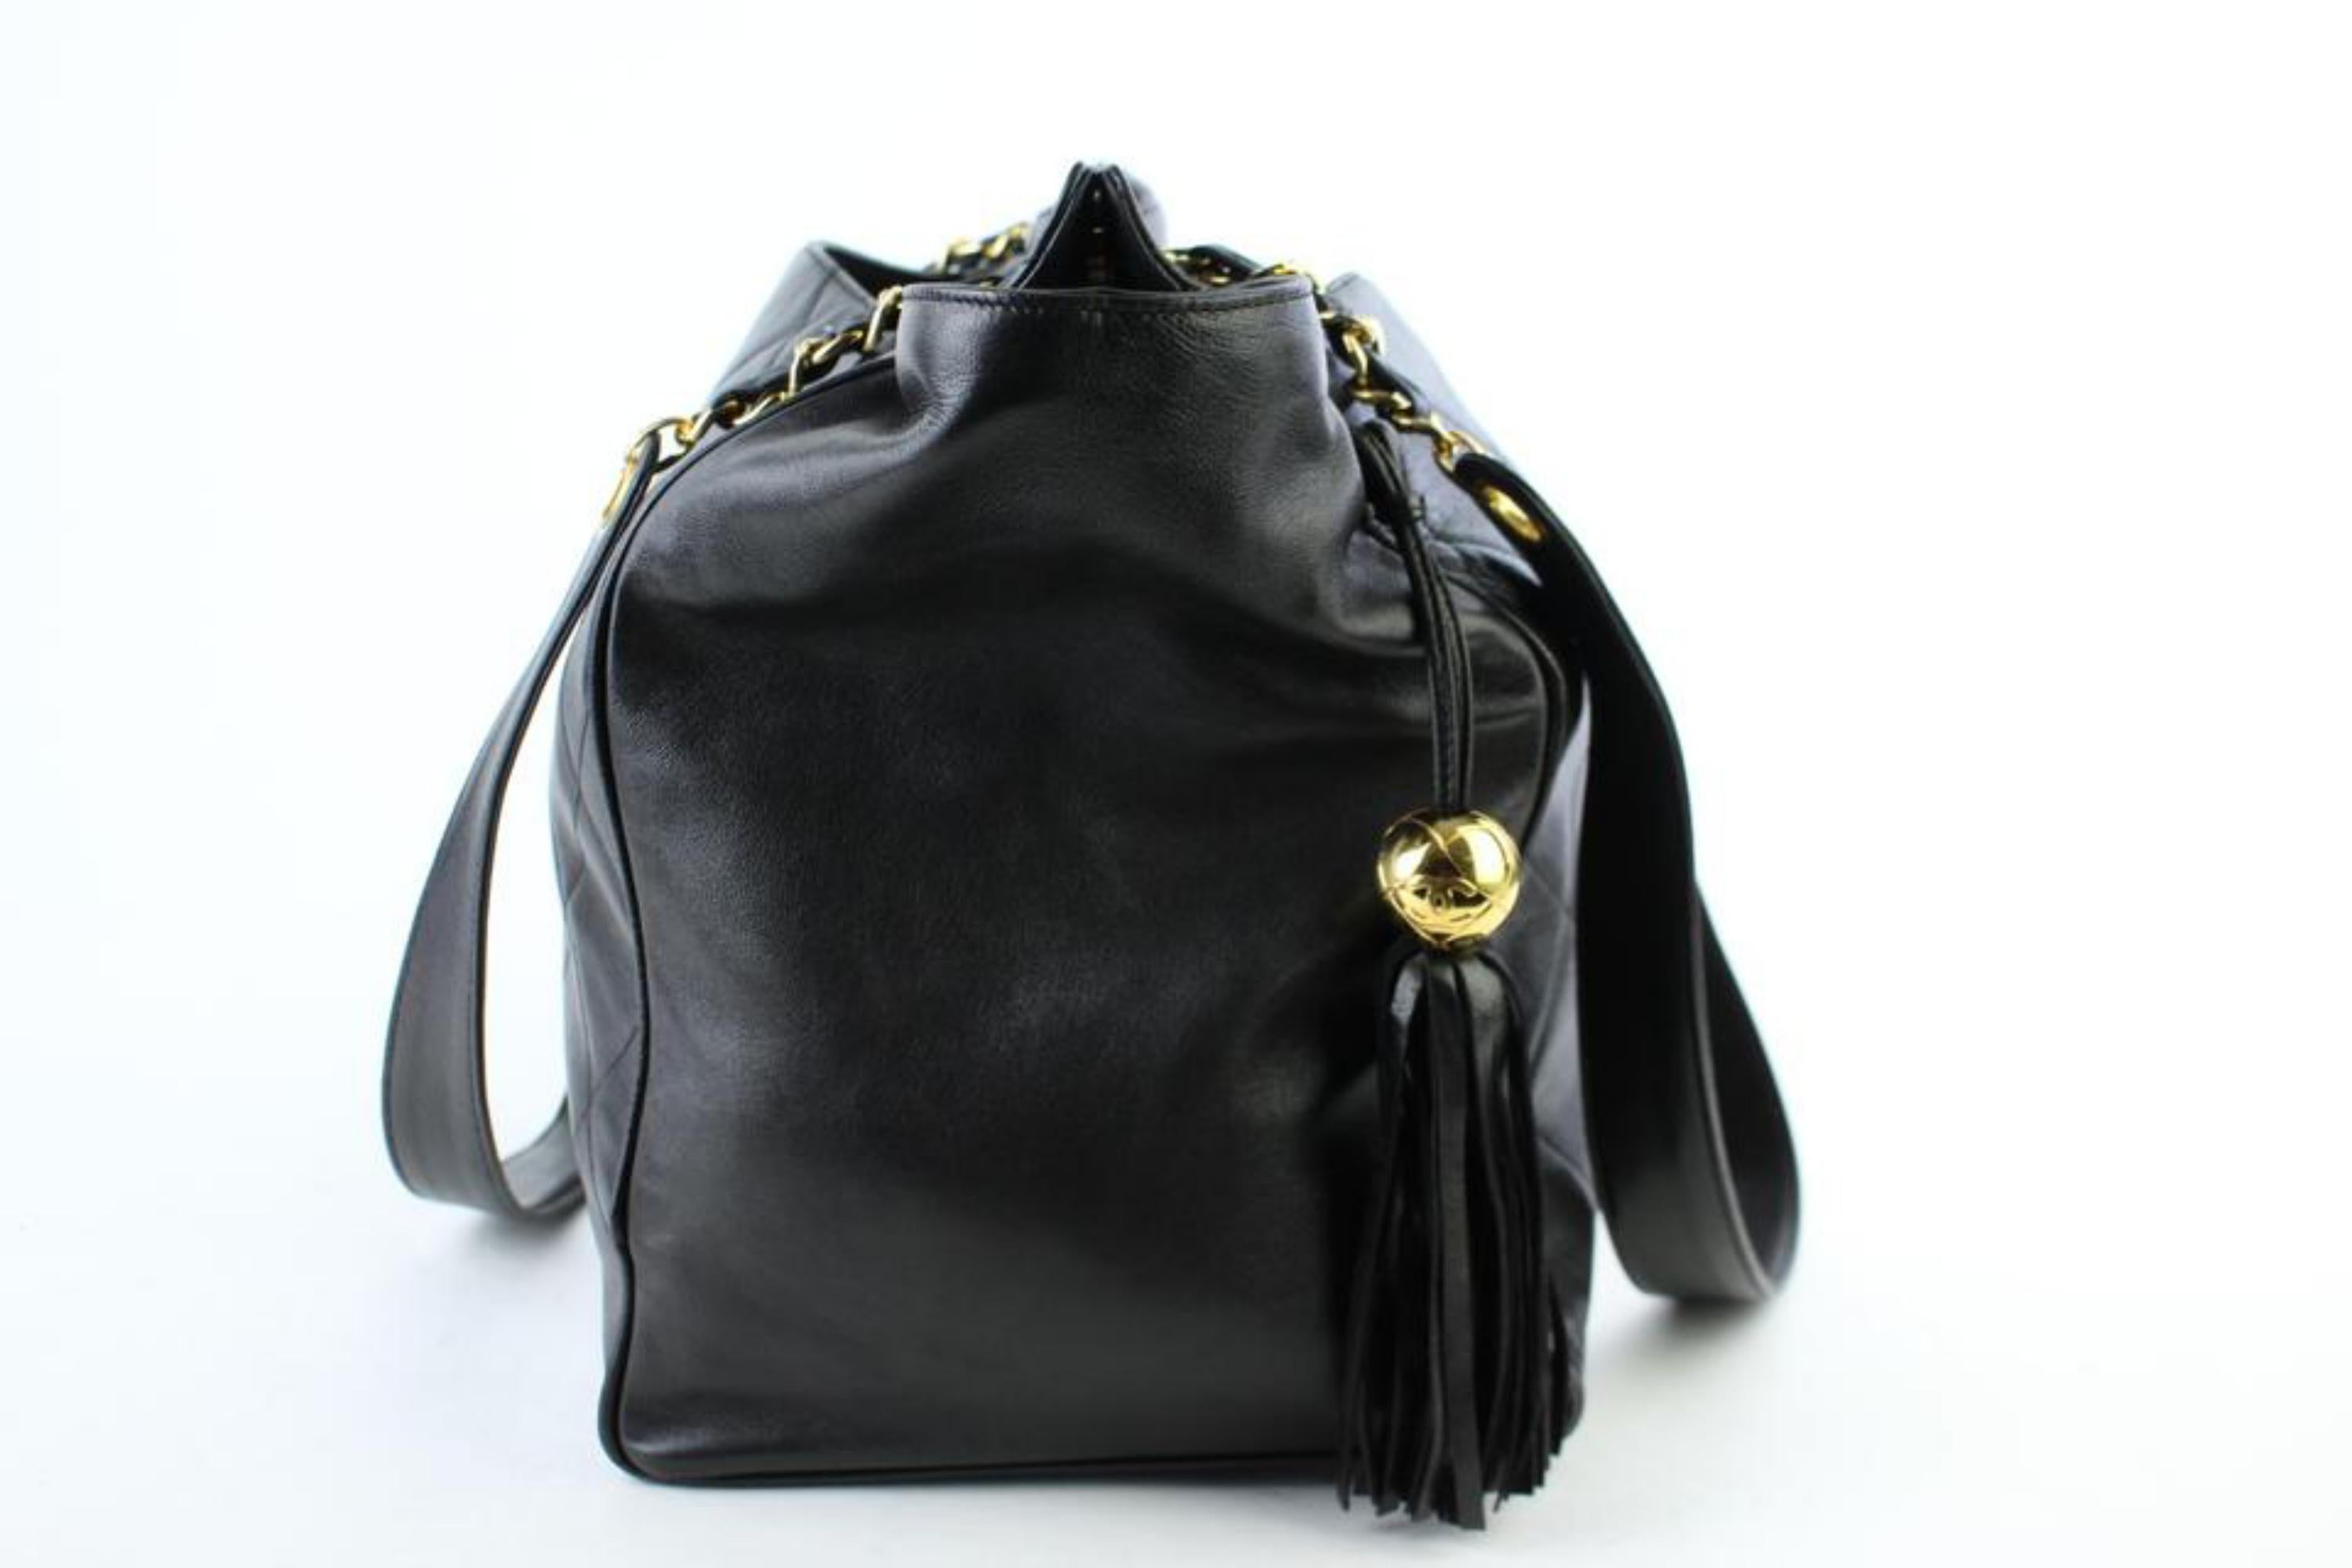 Chanel Quilted Lambskin Fringe Tassle Tote 221807 Black Leather Shoulder Bag For Sale 7